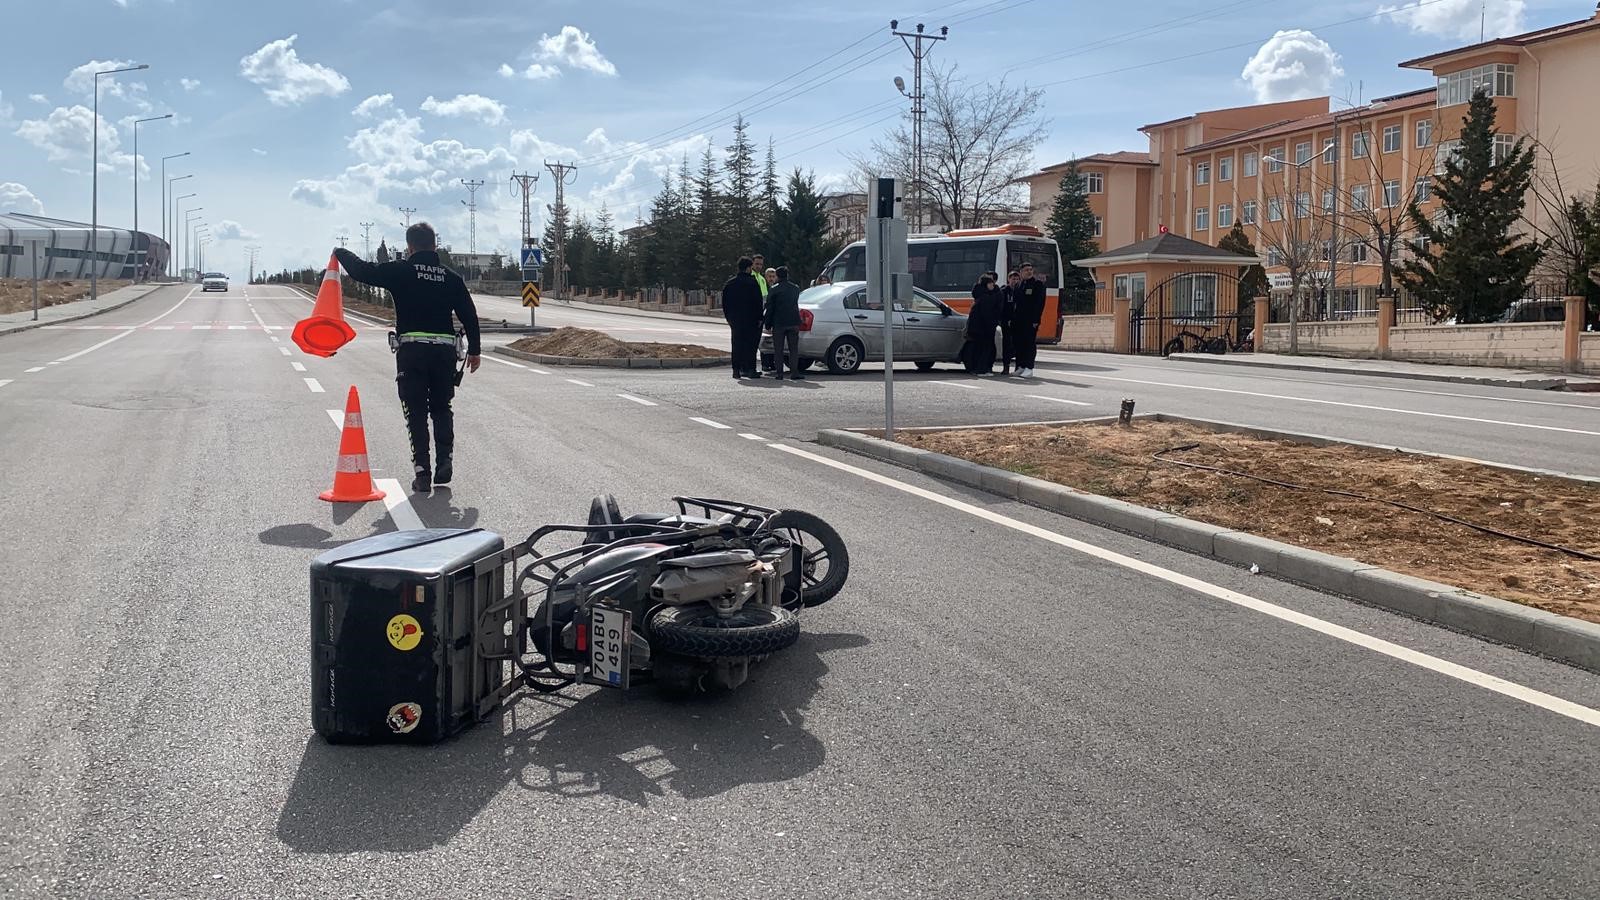 Karaman’da otomobille motosiklet çarpıştı